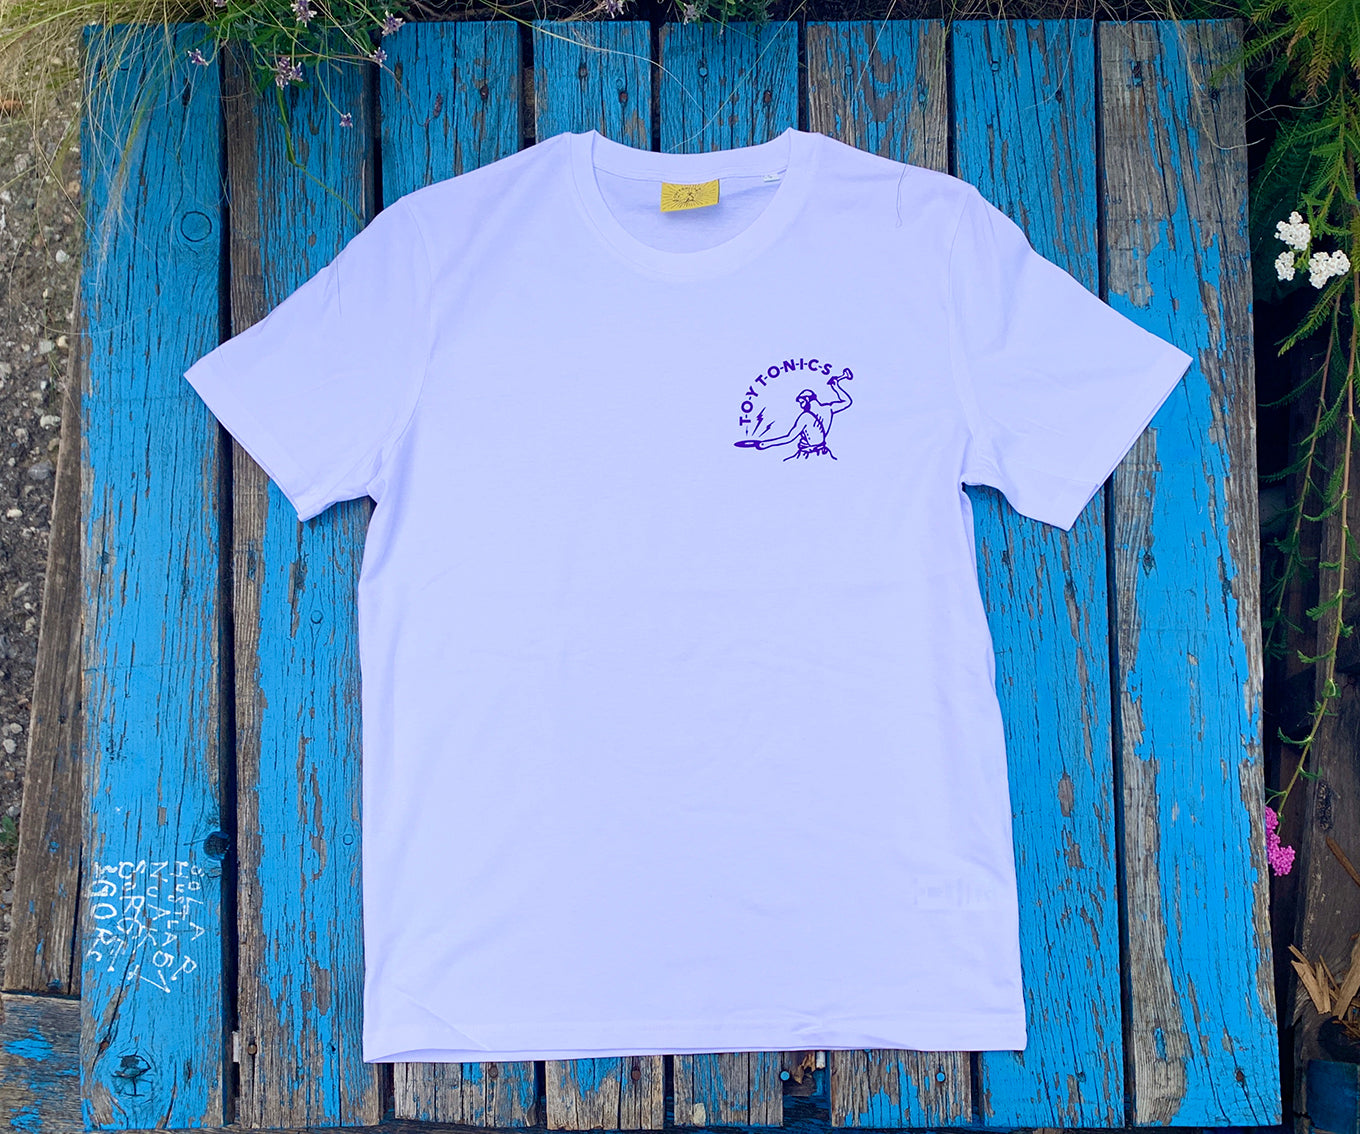 Toy Tonics Pocket Print T-Shirt - purple on white